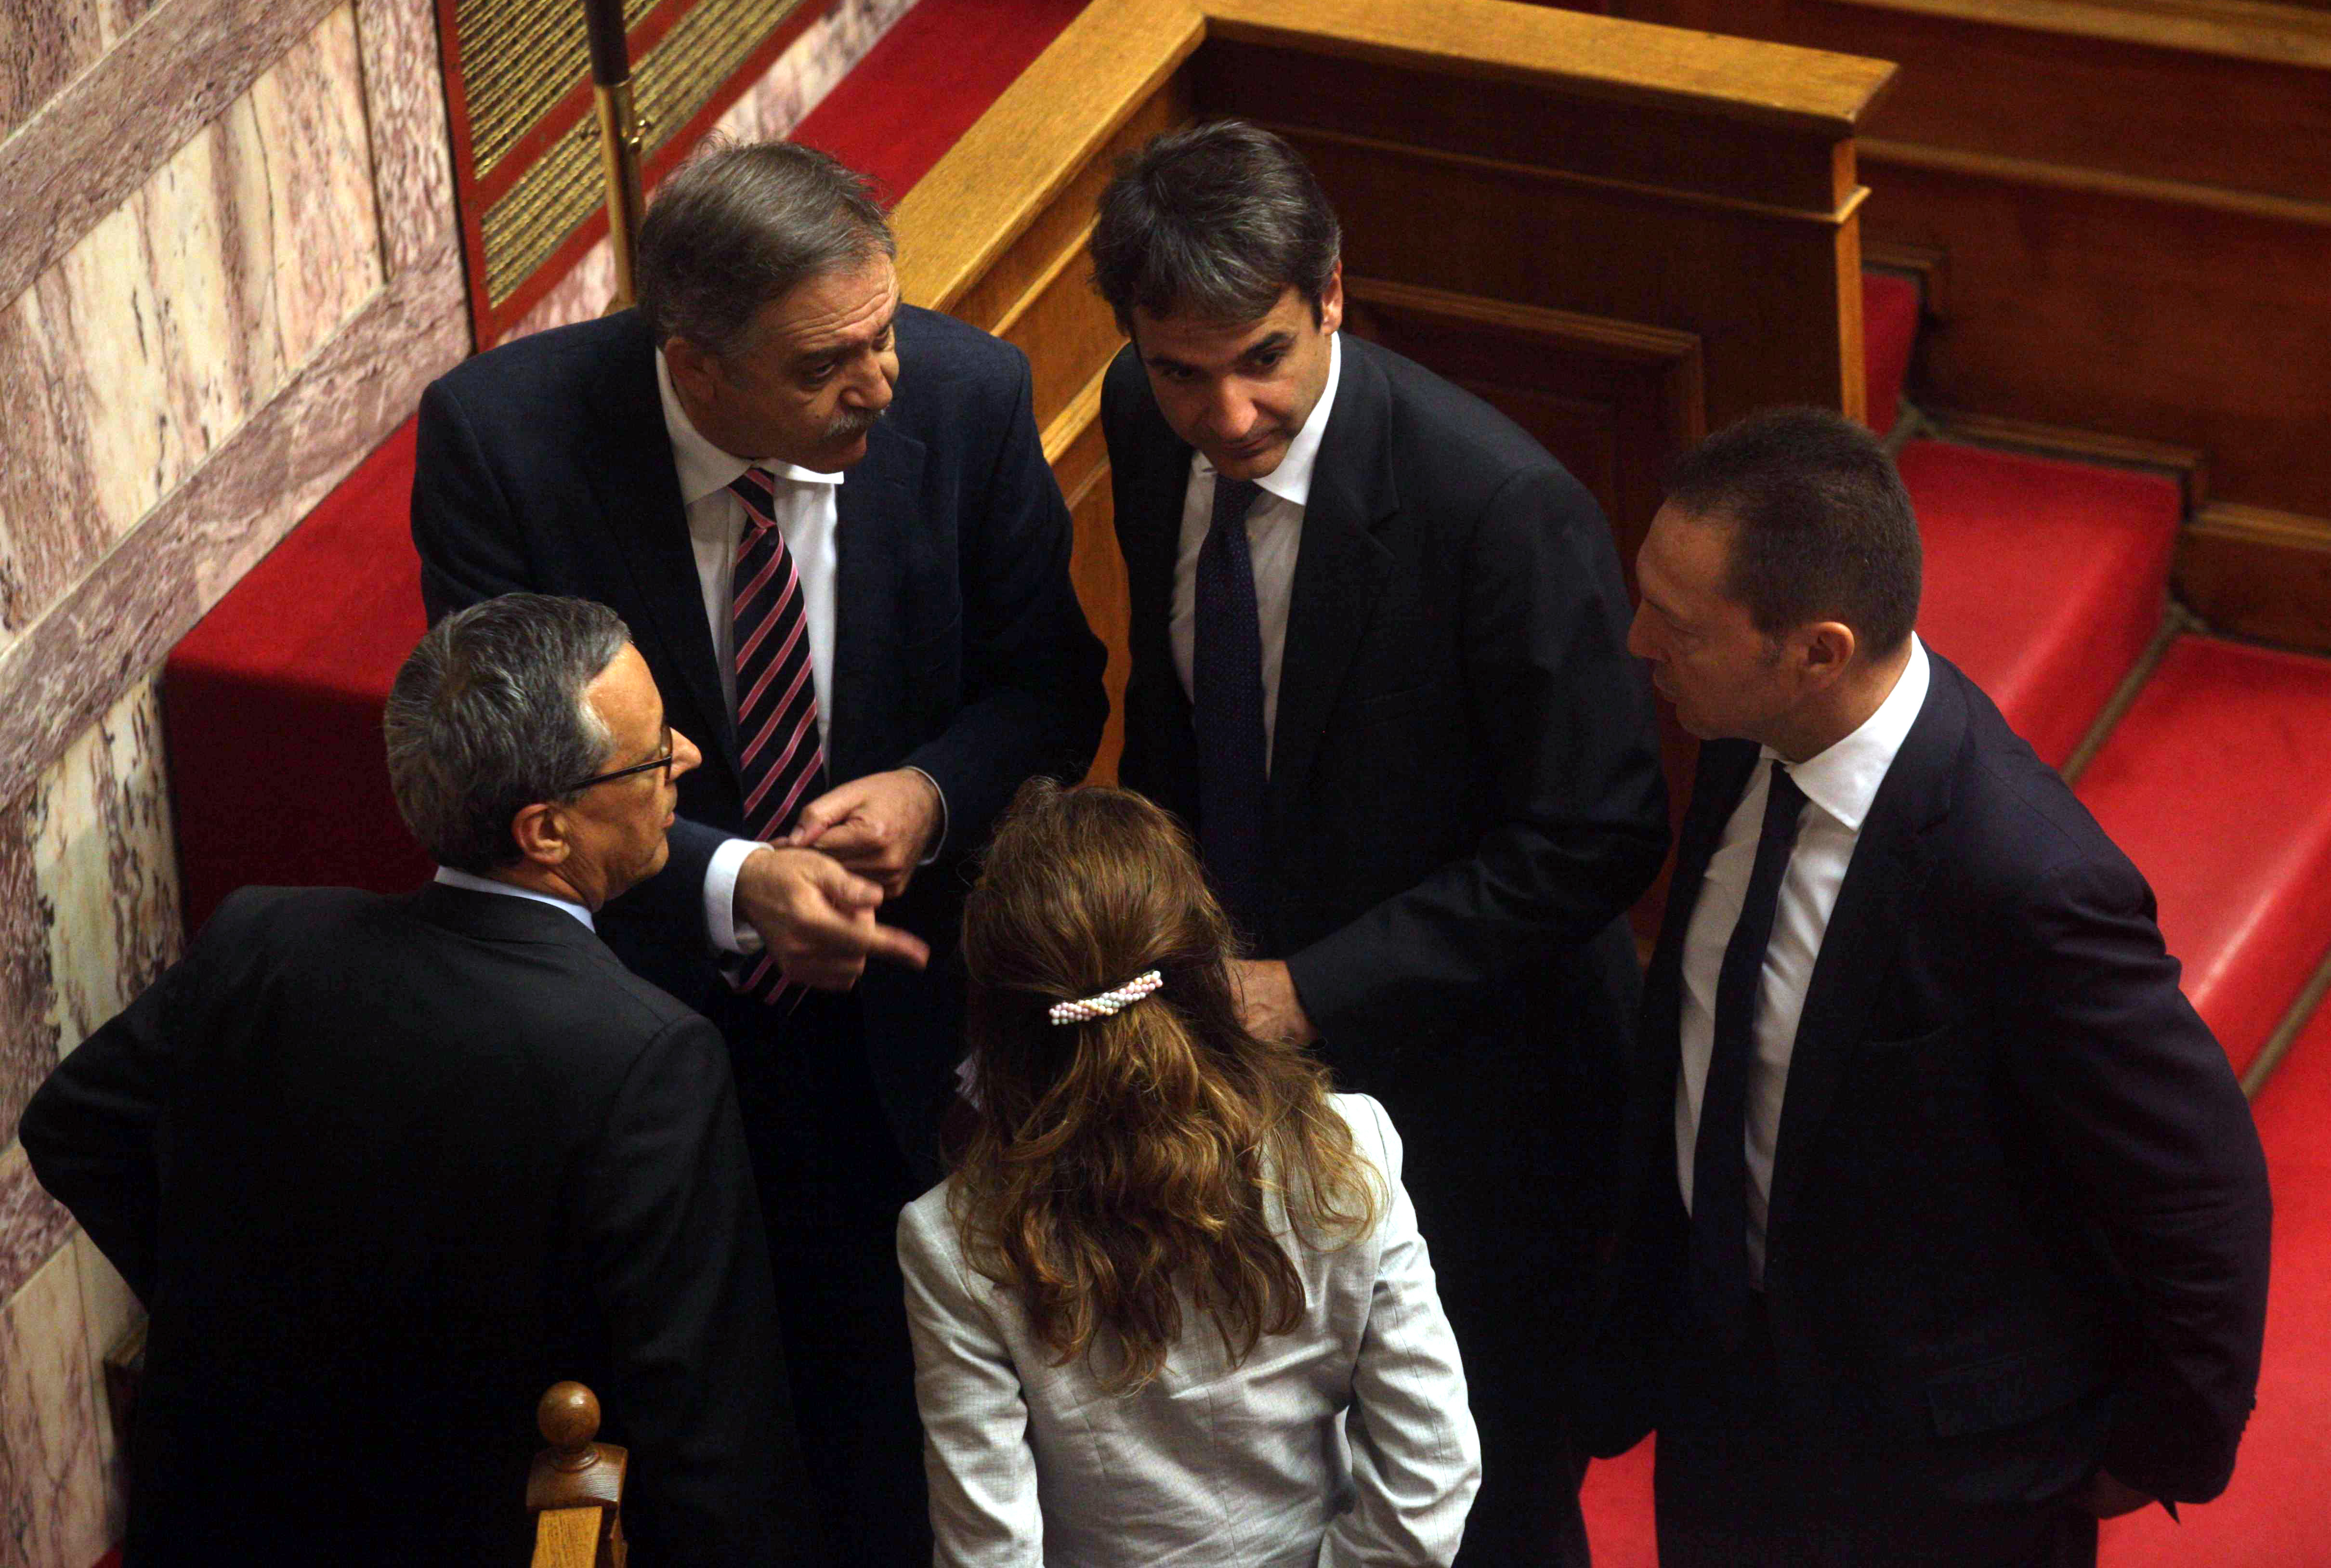 ΦΩΤΟ EUROKINISSI - Ο κ. Μπαλτάκος έφτασε στη Βουλή μετά τις διαρροές για